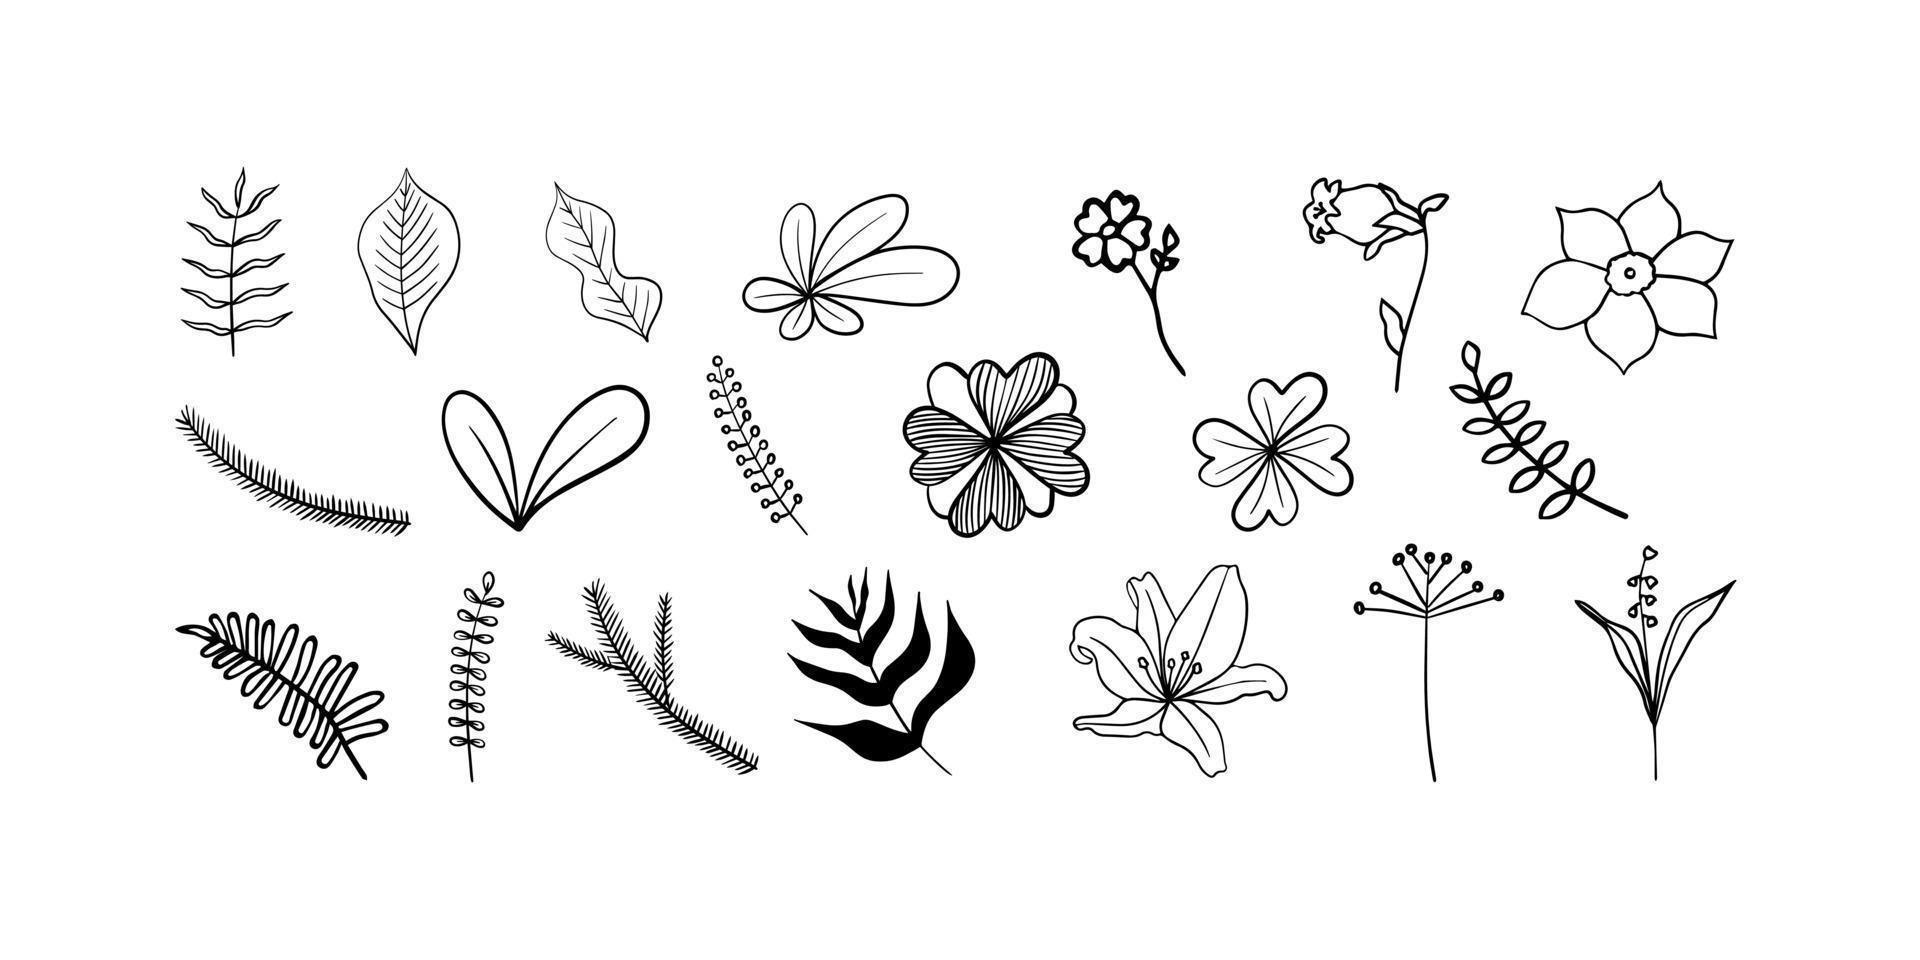 hojas orgánicas, flores, plantas. conjunto de elementos dibujados a mano de moda. vector. vector